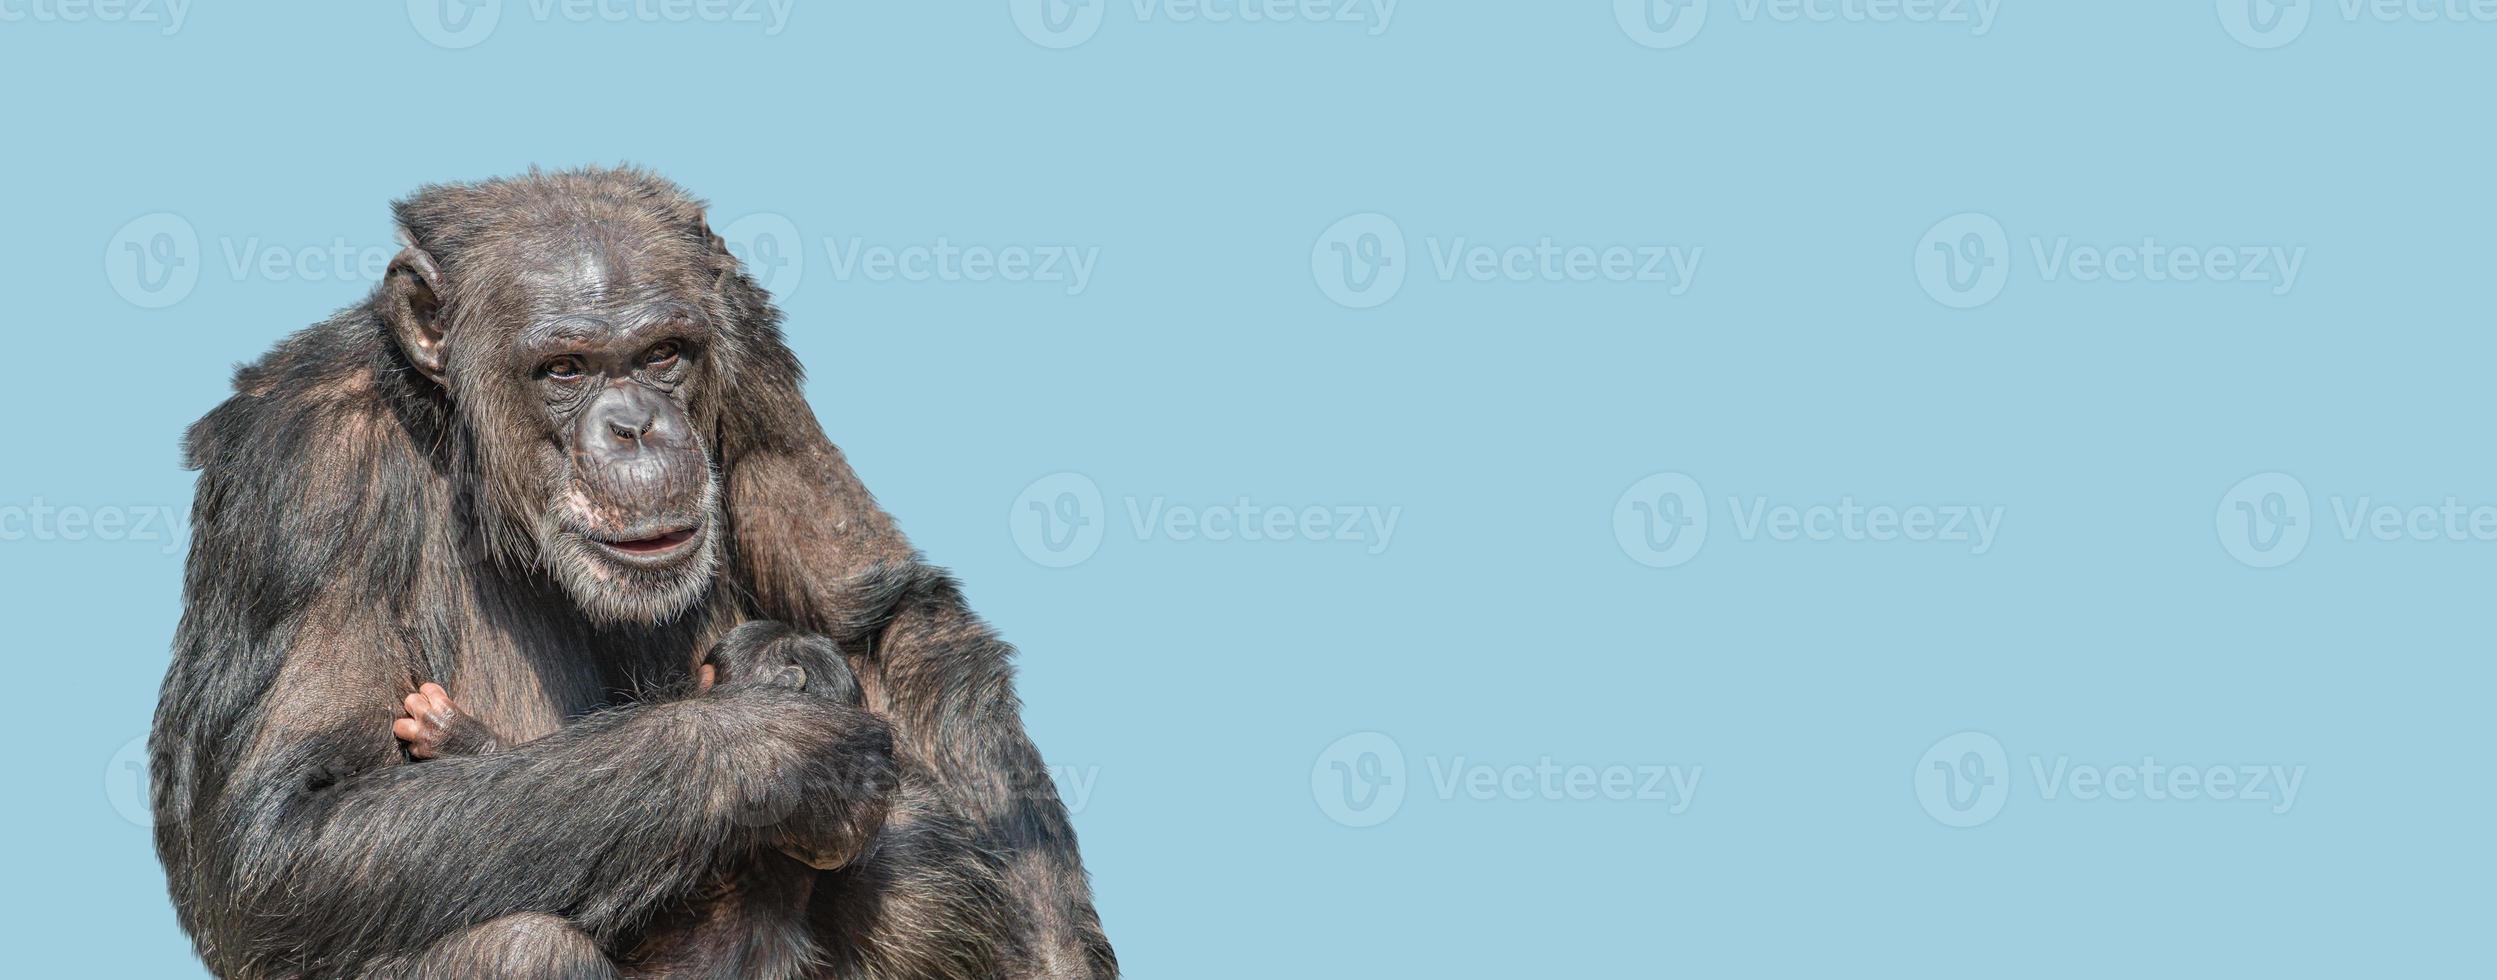 banner con un retrato de la madre chimpancé con su lindo bebé, primer plano, detalles con espacio de copia y fondo sólido de cielo azul. concepto de biodiversidad, cuidado de los animales, maternidad y conservación de la vida silvestre. foto